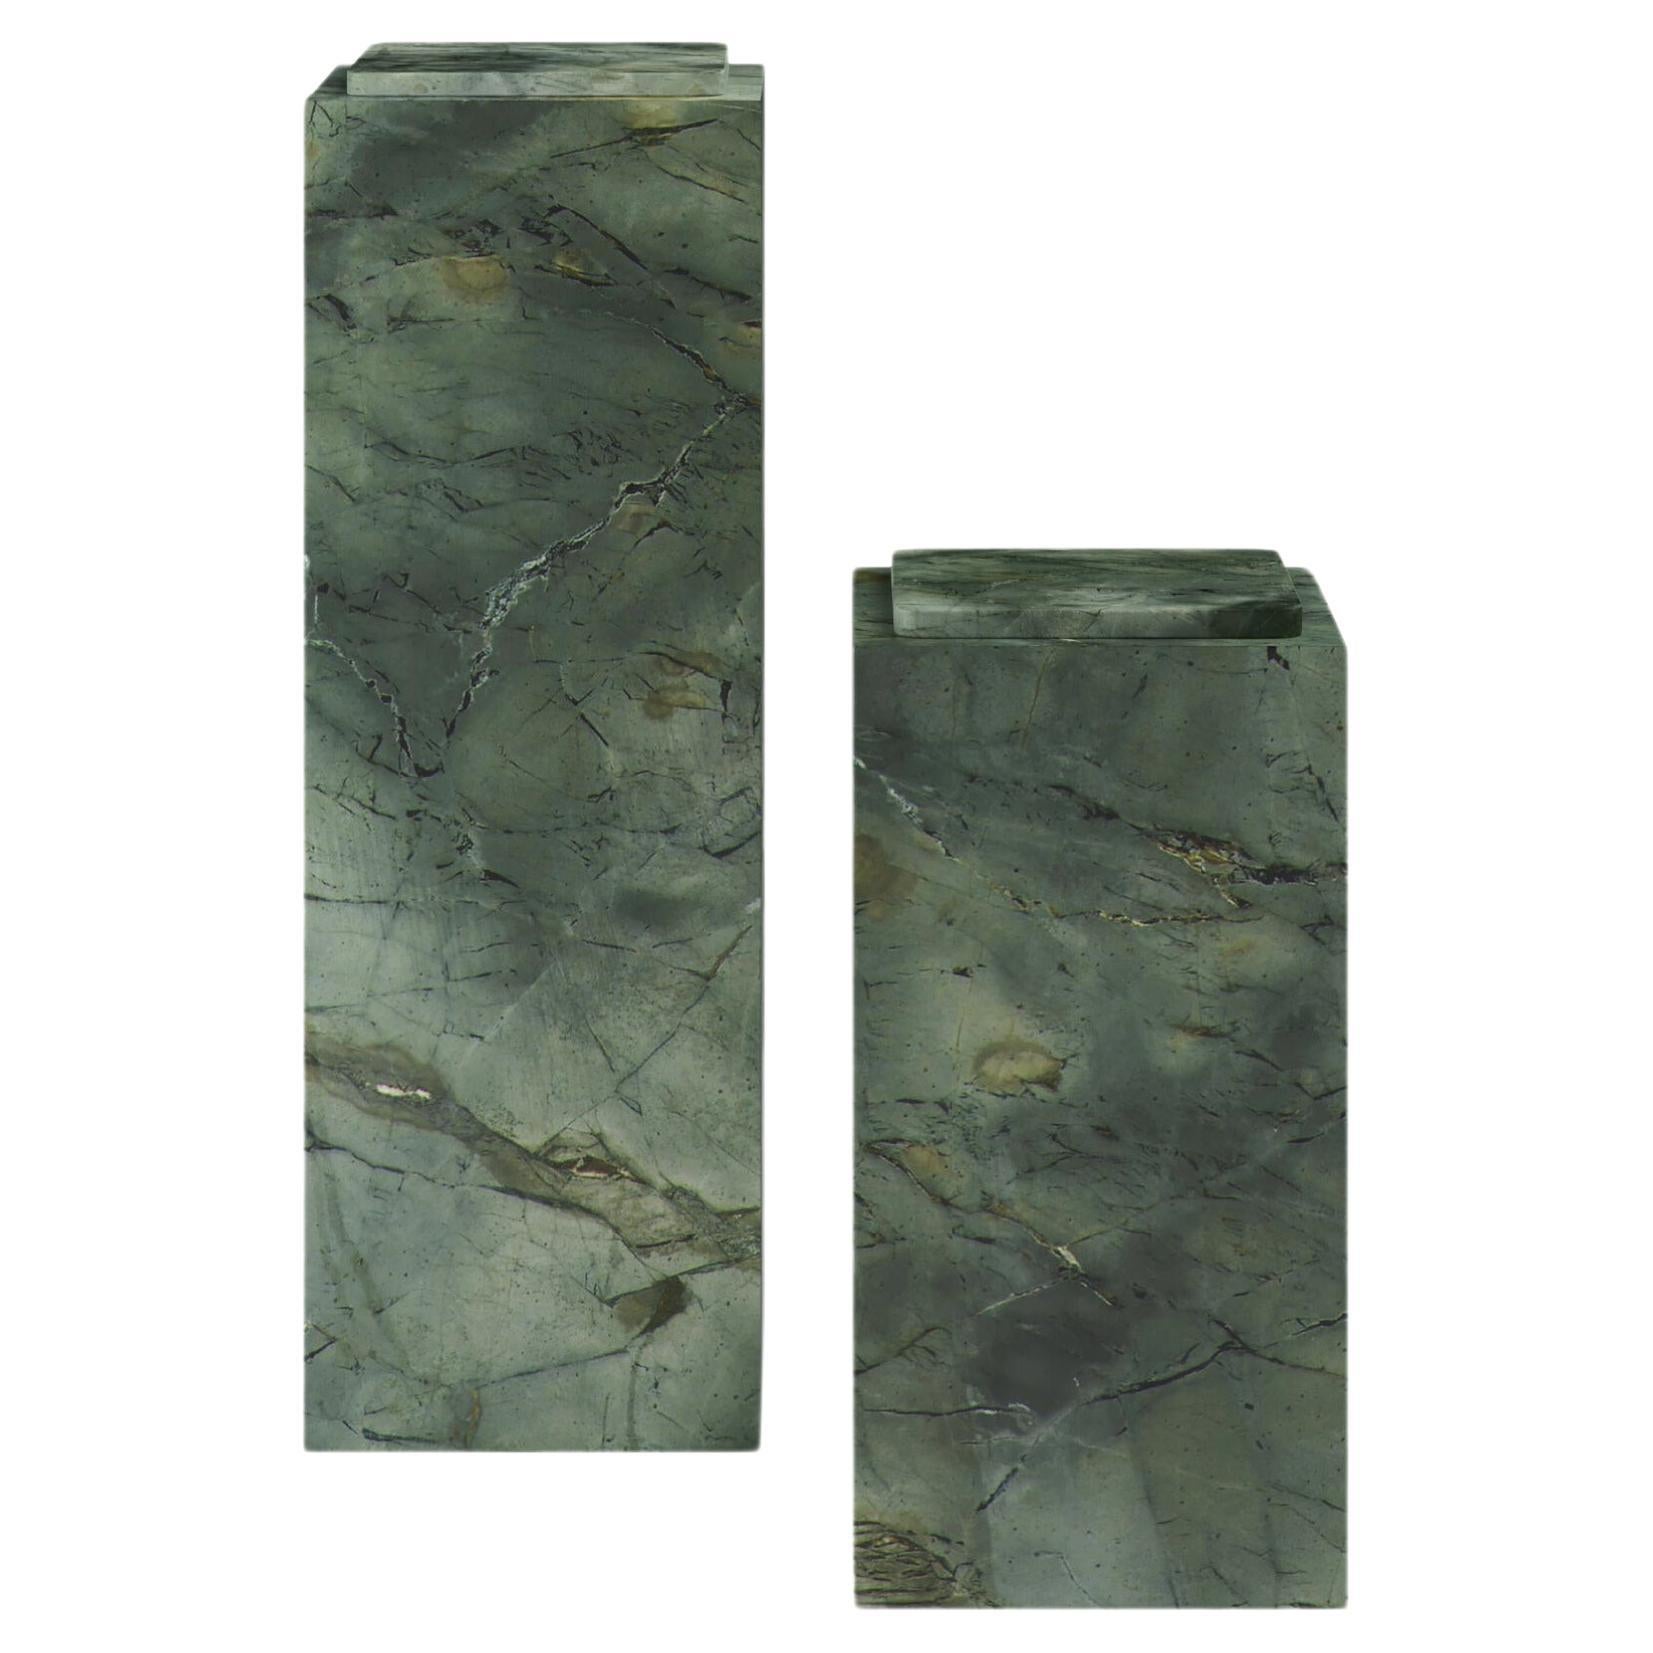 FORM(LA) Cubo Pedestal 12”L x 12"W x 36”H Verde Edinburgh Marble For Sale